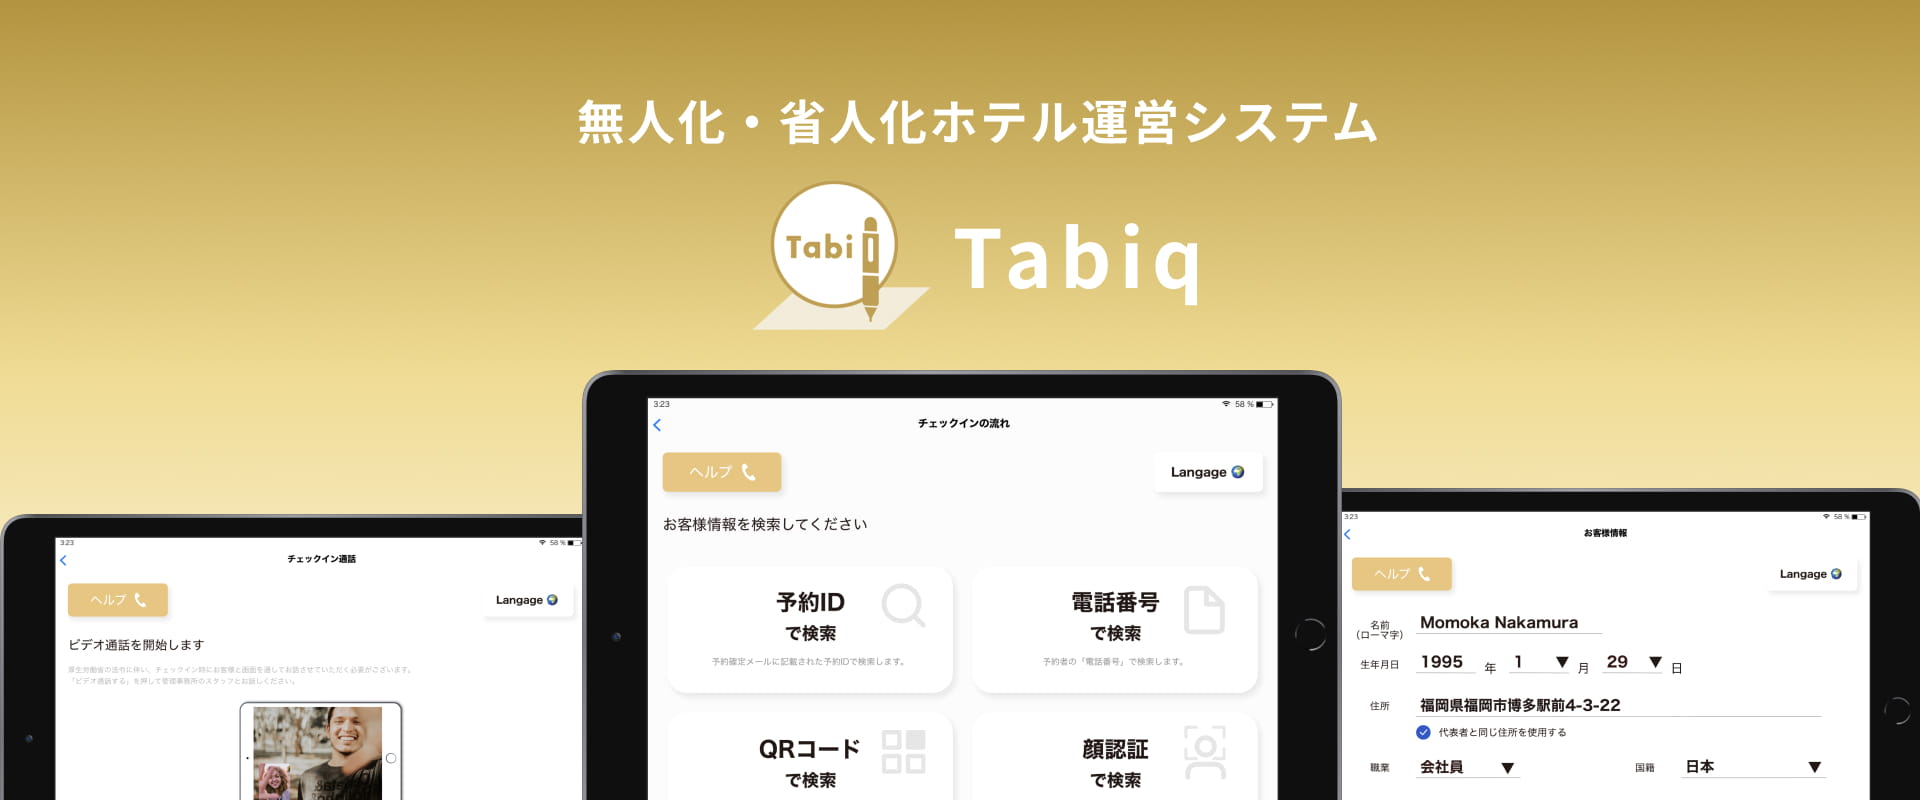 無人化・省人化ホテル運営システム Tabiq